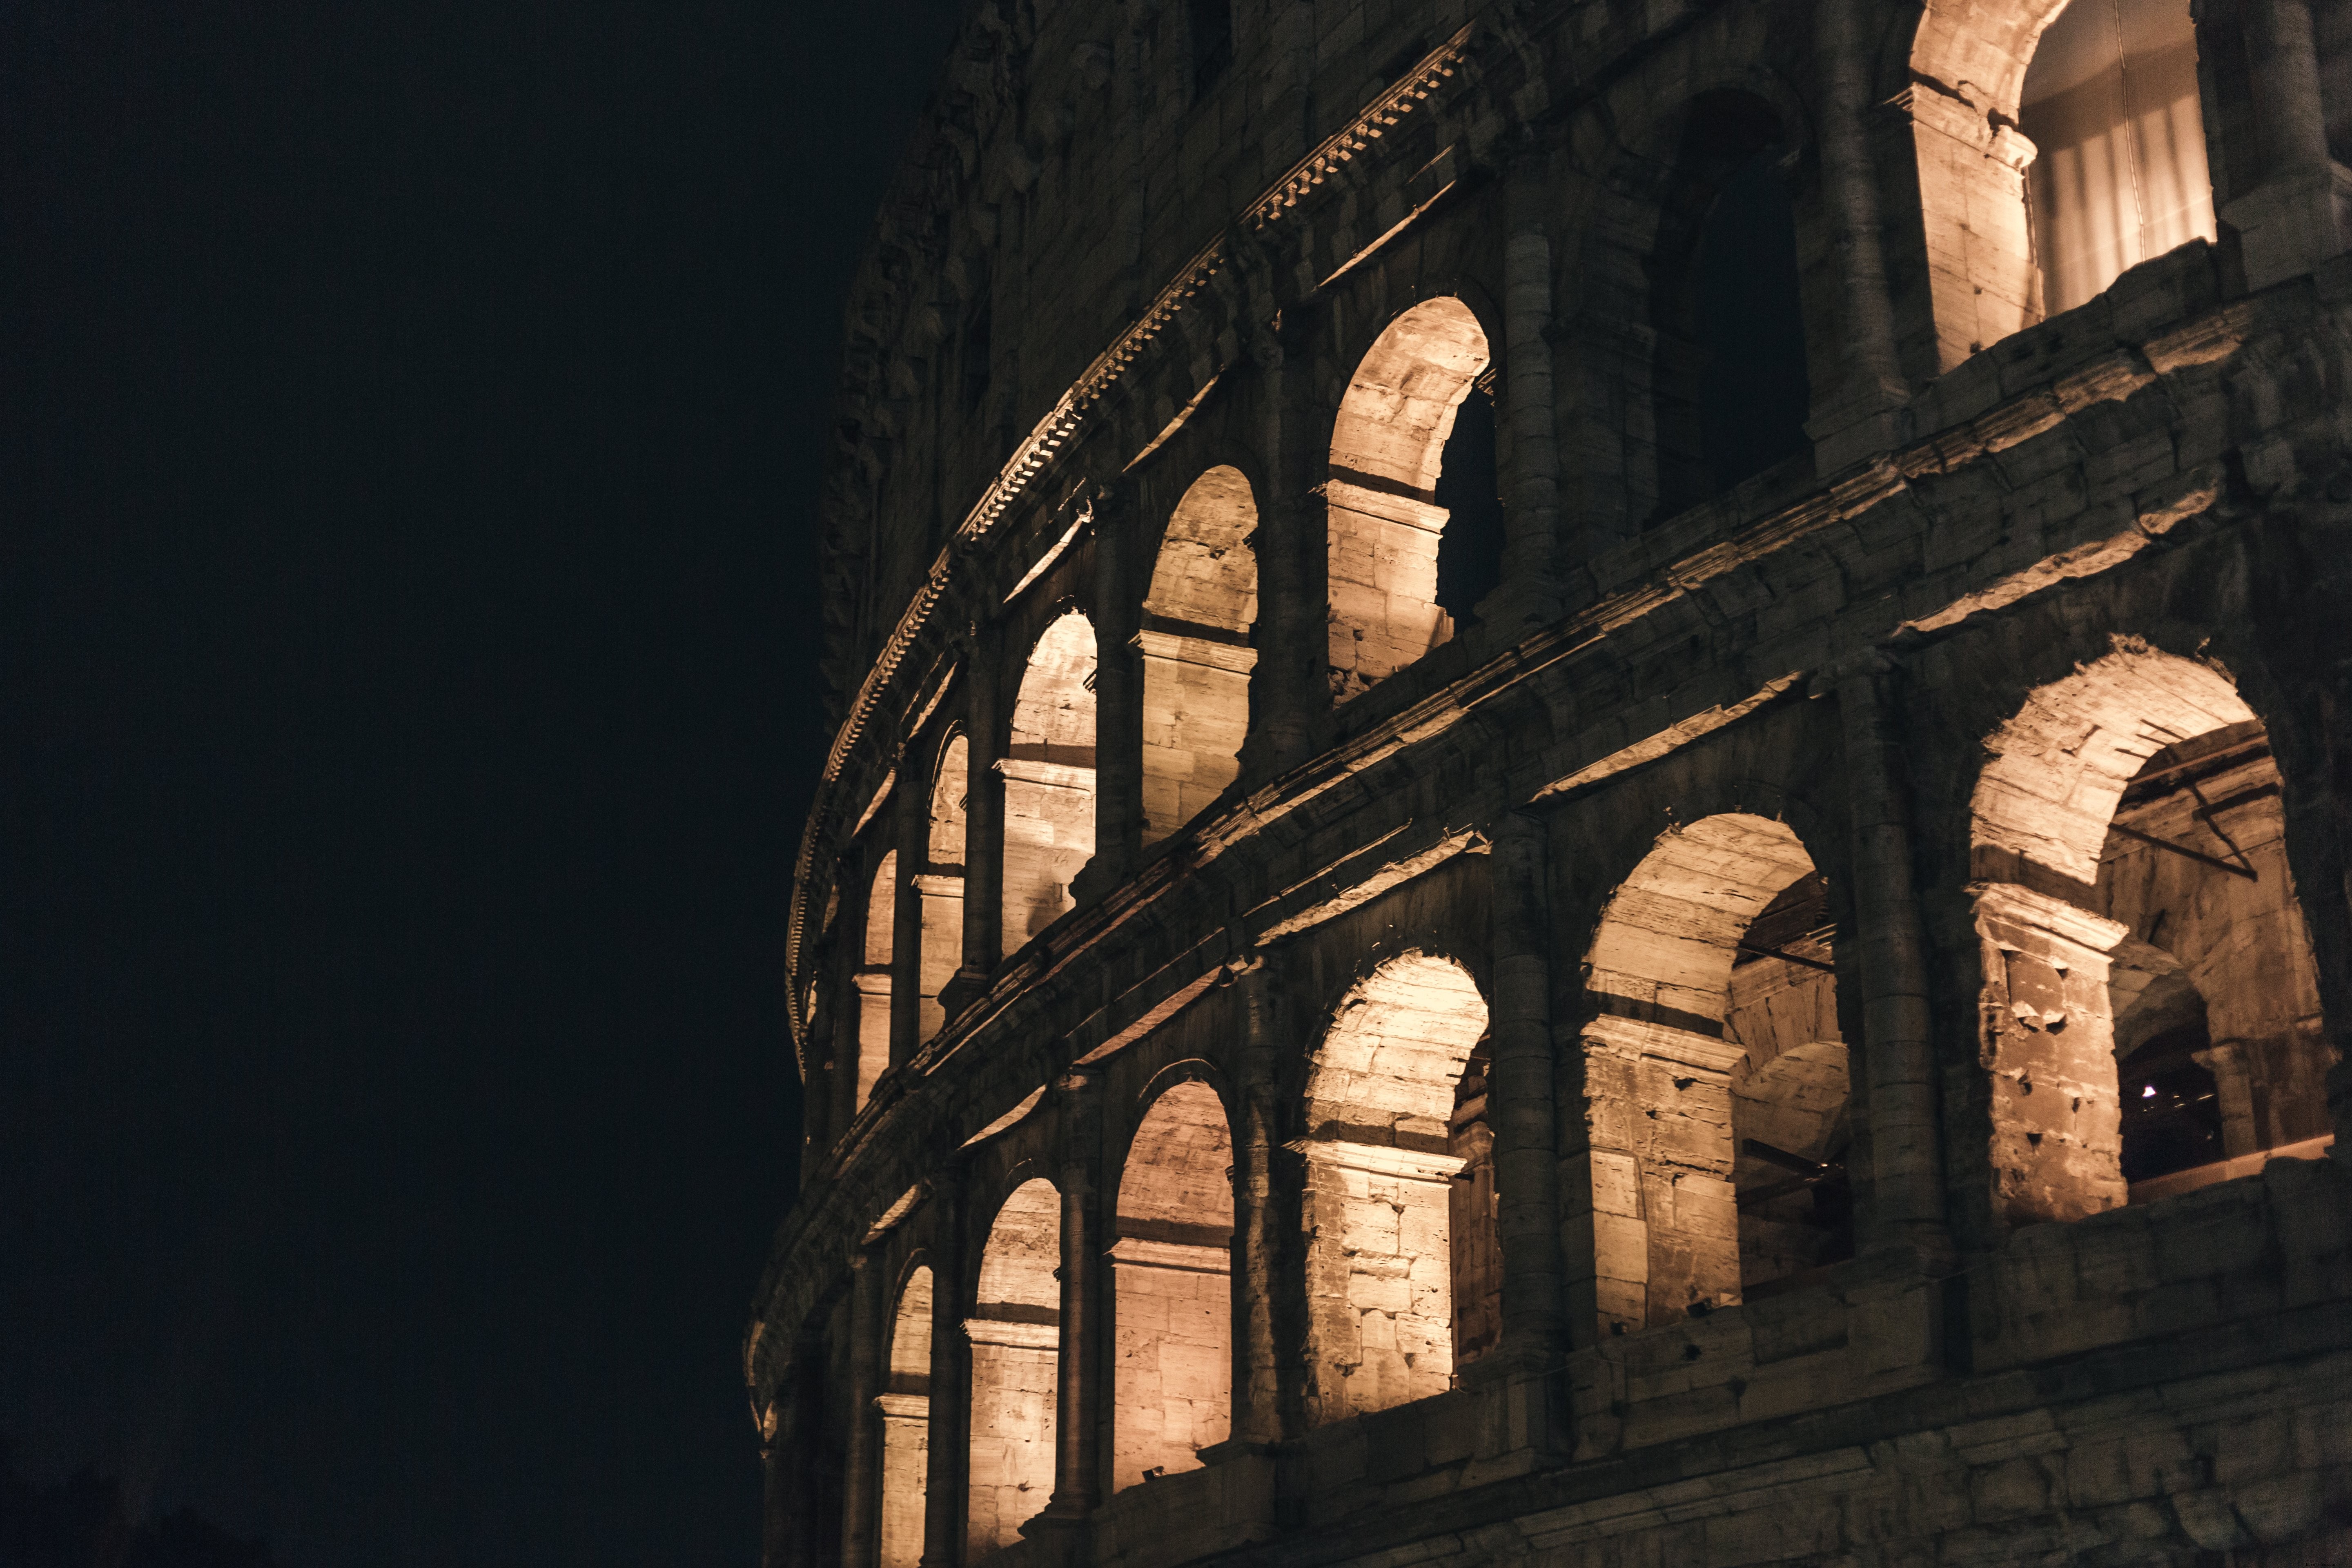 Foto nocturna del Coliseo de Roma